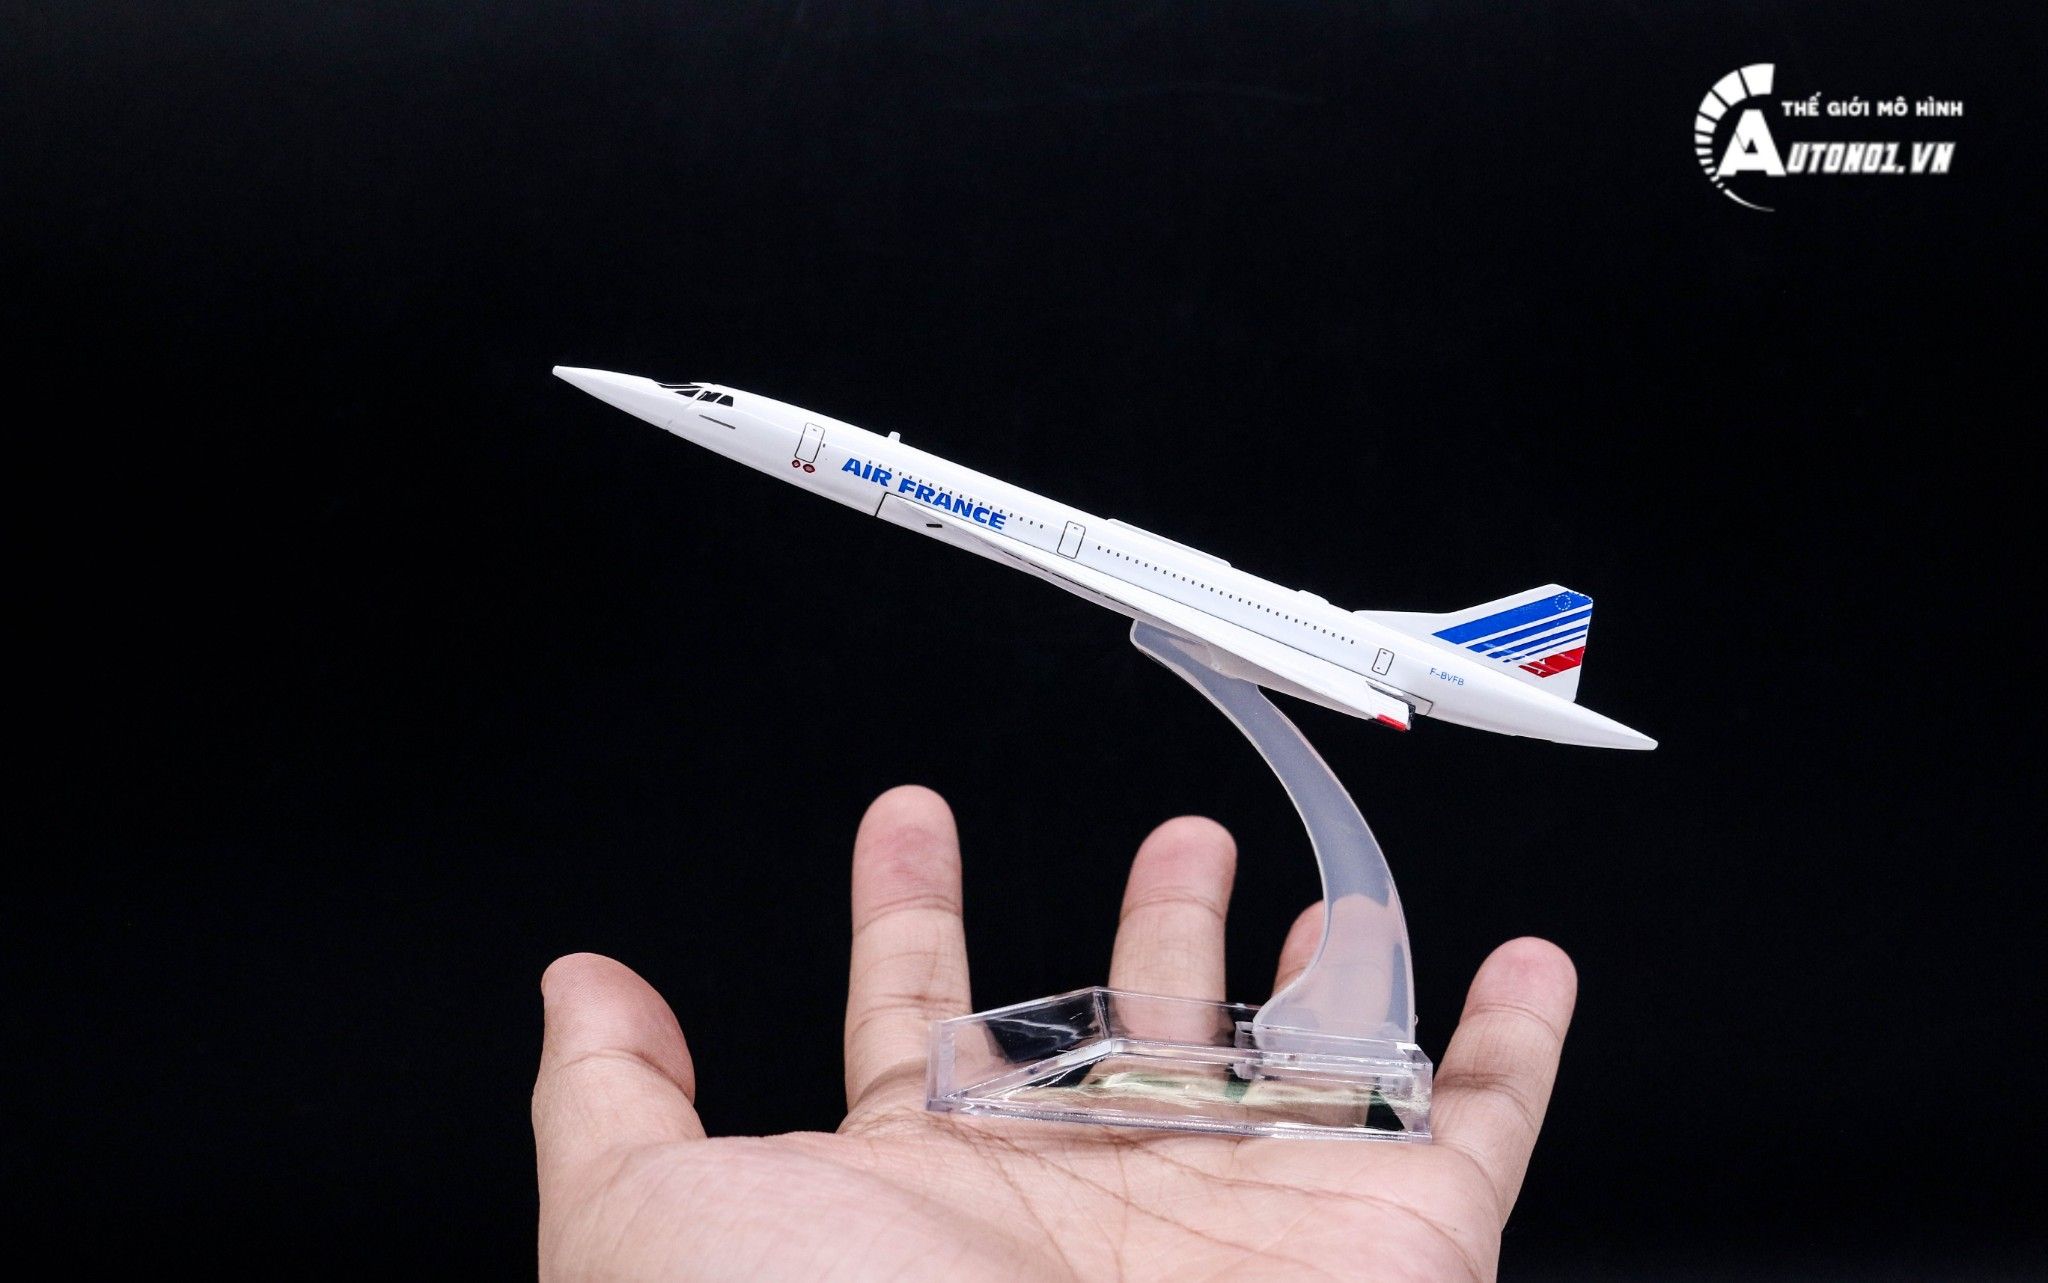  Mô hình máy bay phản lực Concorde Air France 16cm MB16162 